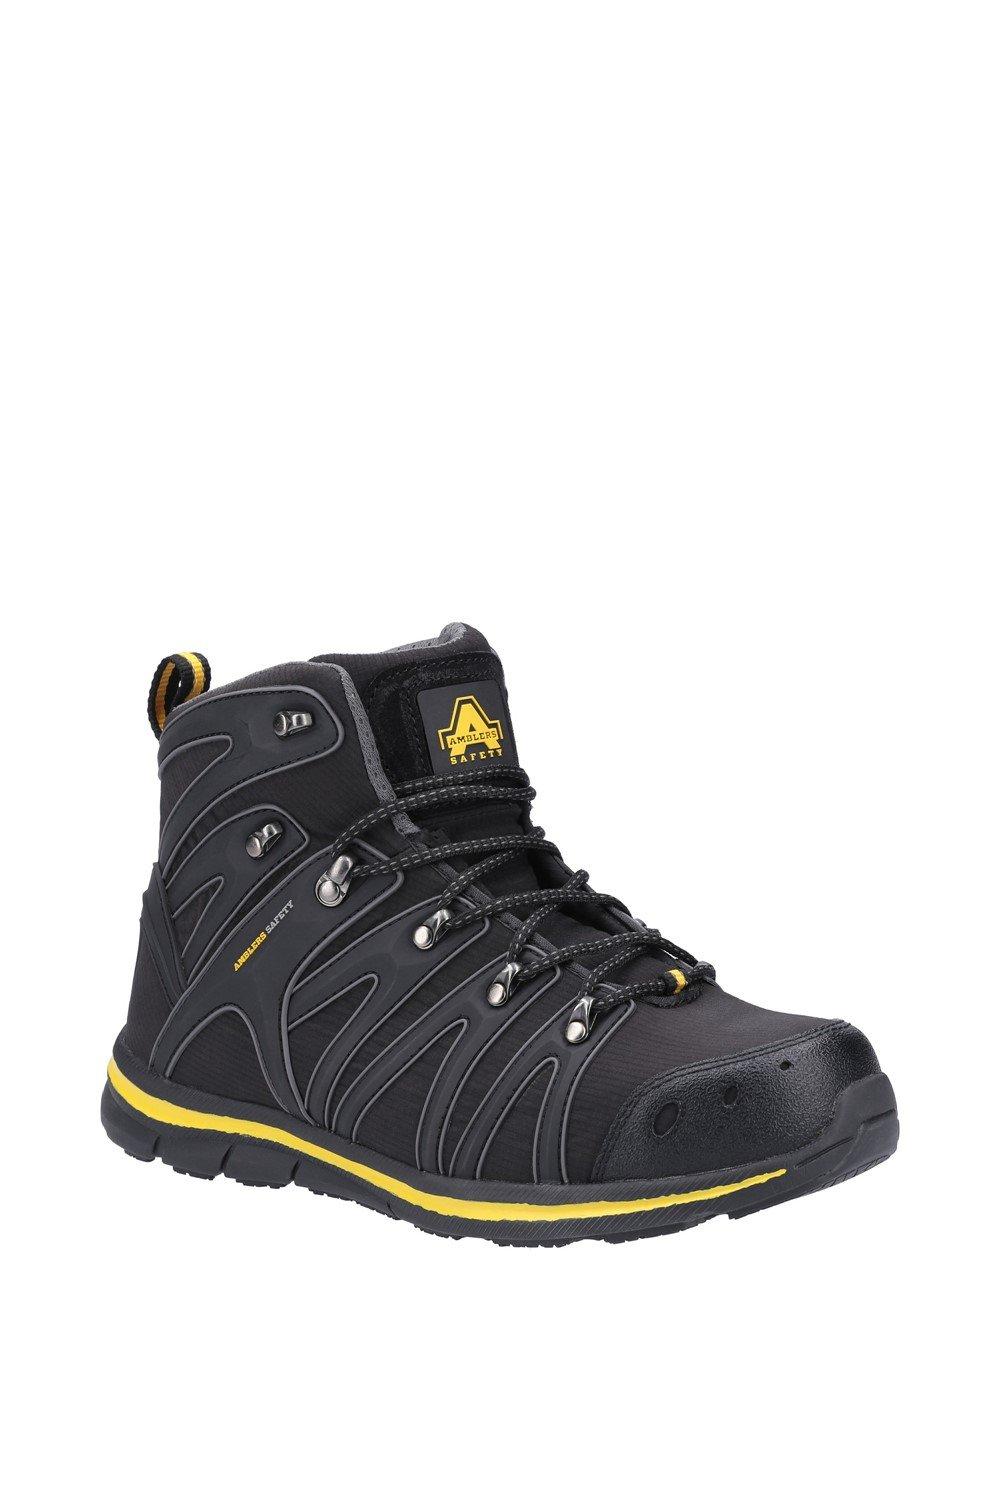 Защитные ботинки AS254 Amblers Safety, черный ботинки мужские рабочие со стальным носком легкие защитные нескользящие дышащие кроссовки для строительства стальной носок